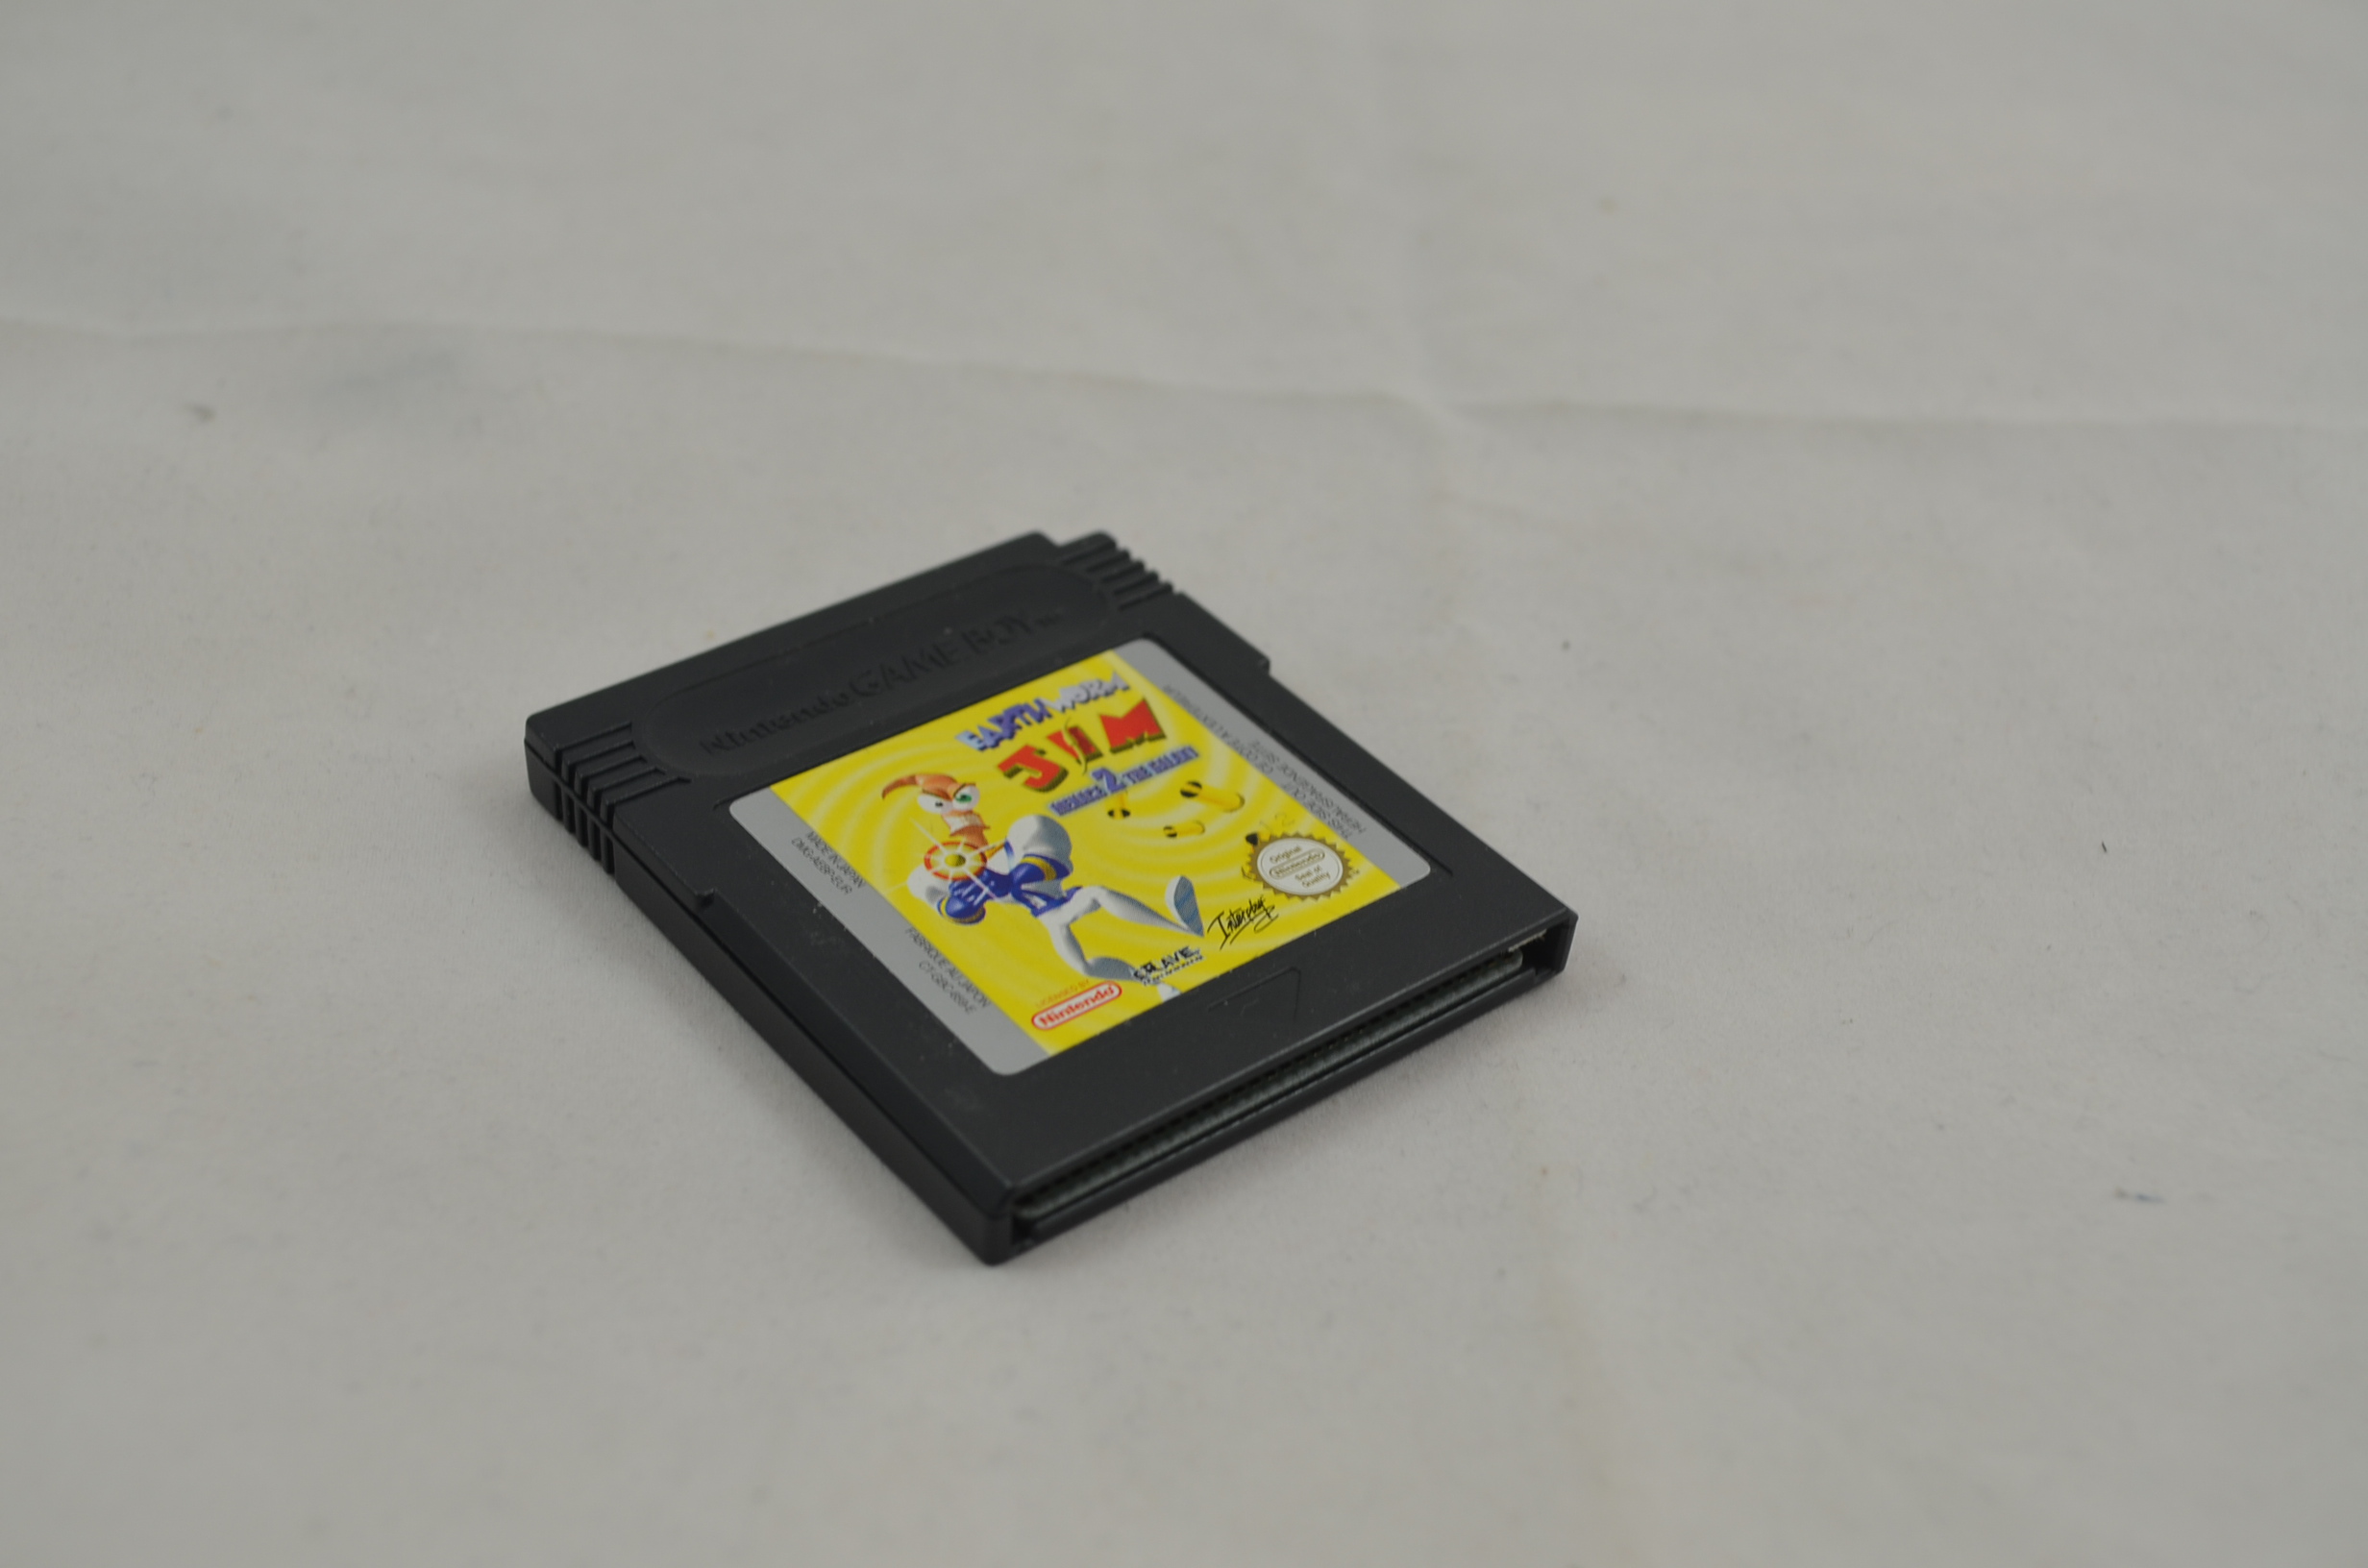 Produktbild von Earth Worm Jim Menace 2 the Galaxy Game Boy Spiel